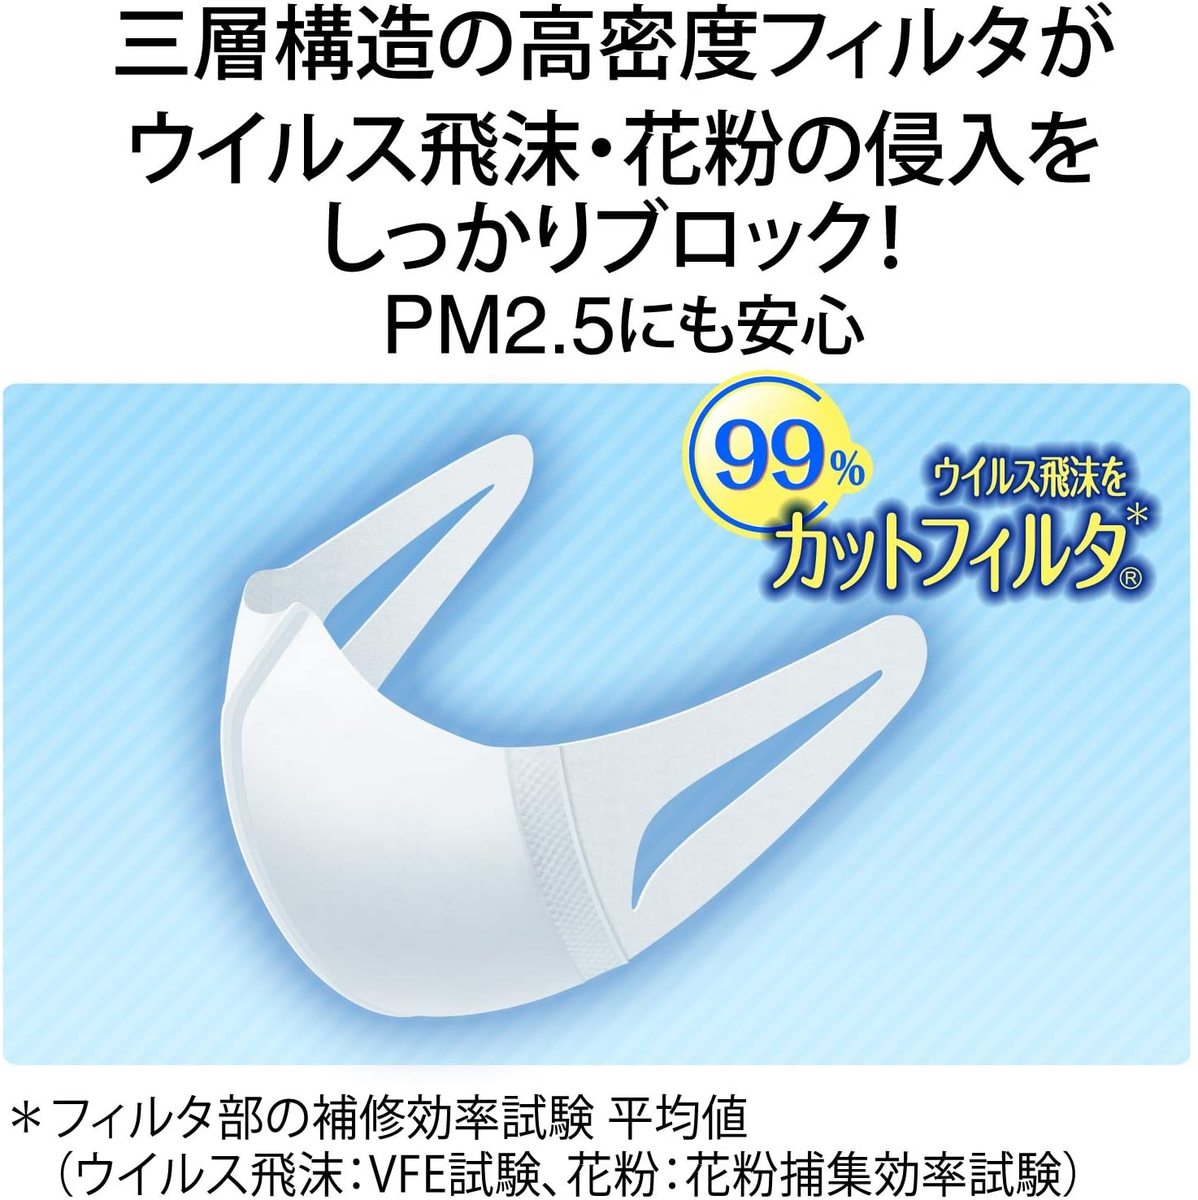 超立体マスク スタンダード 大きめサイズ 30枚入(unicharm)(日本製 PM2.5対応)